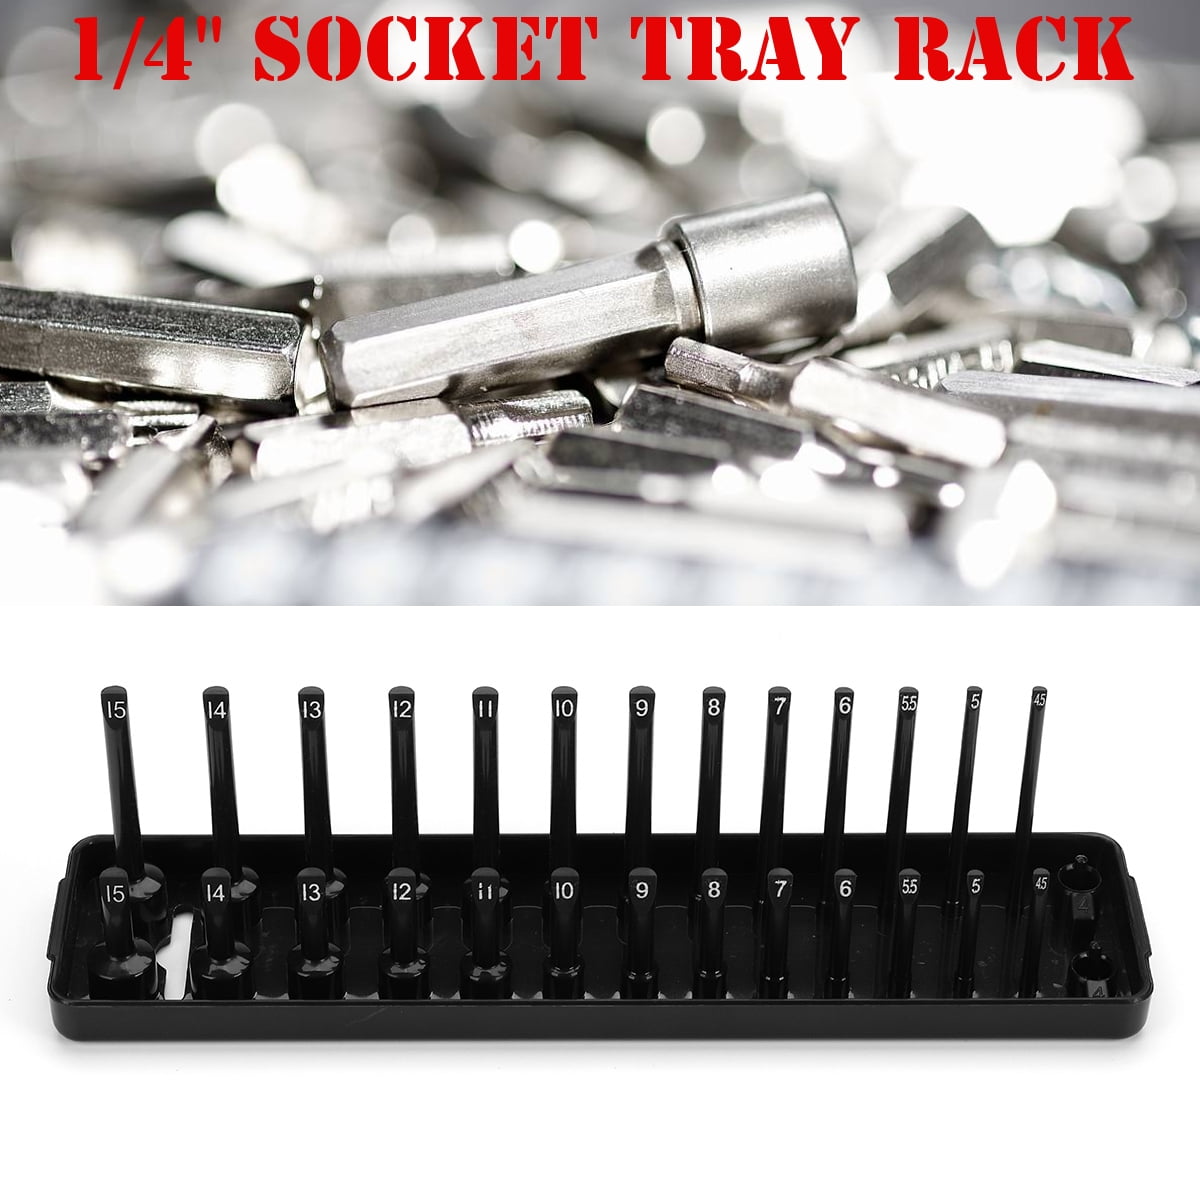 26 Slot Socket Rack Storage Rail Tray Holder Shelf Organizer Stand SAE 1/4'' Red